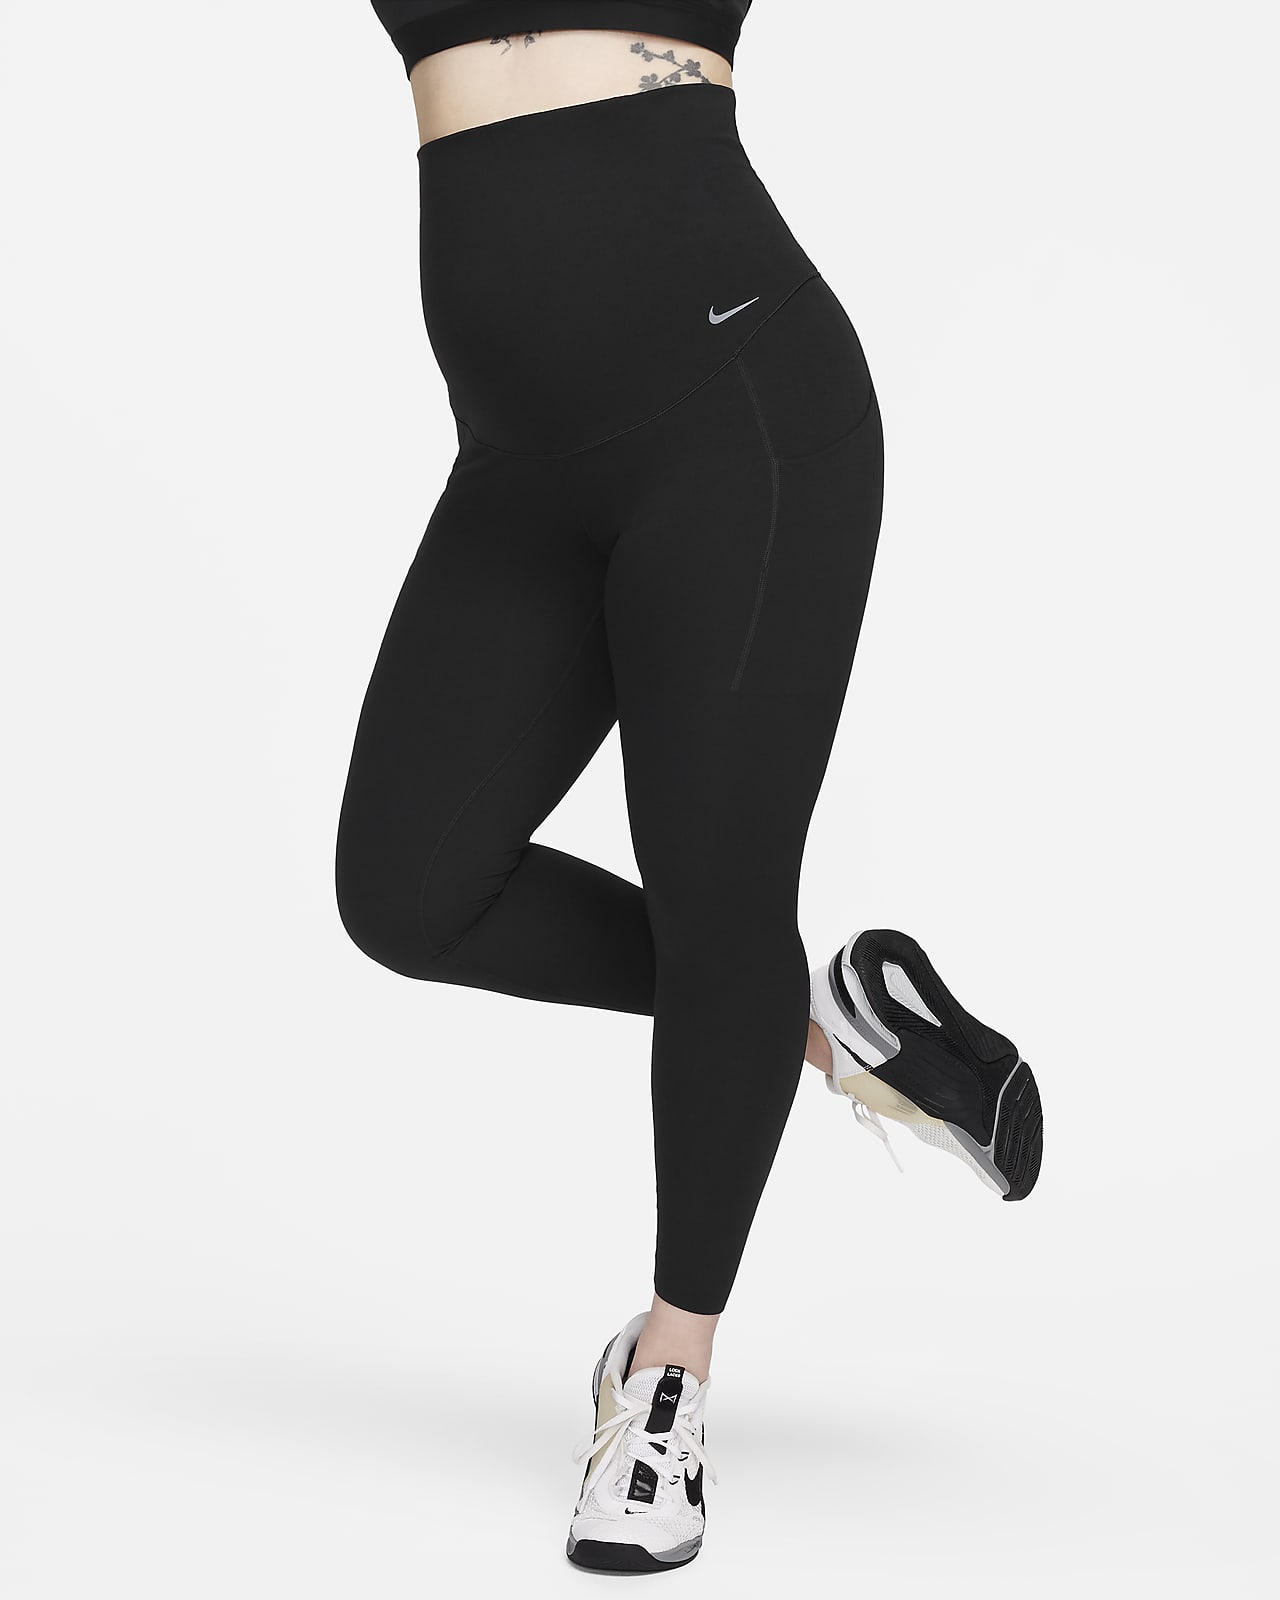 Nike Zenvy Women's Gentle-Support Mid-Rise 7/8 Leggings